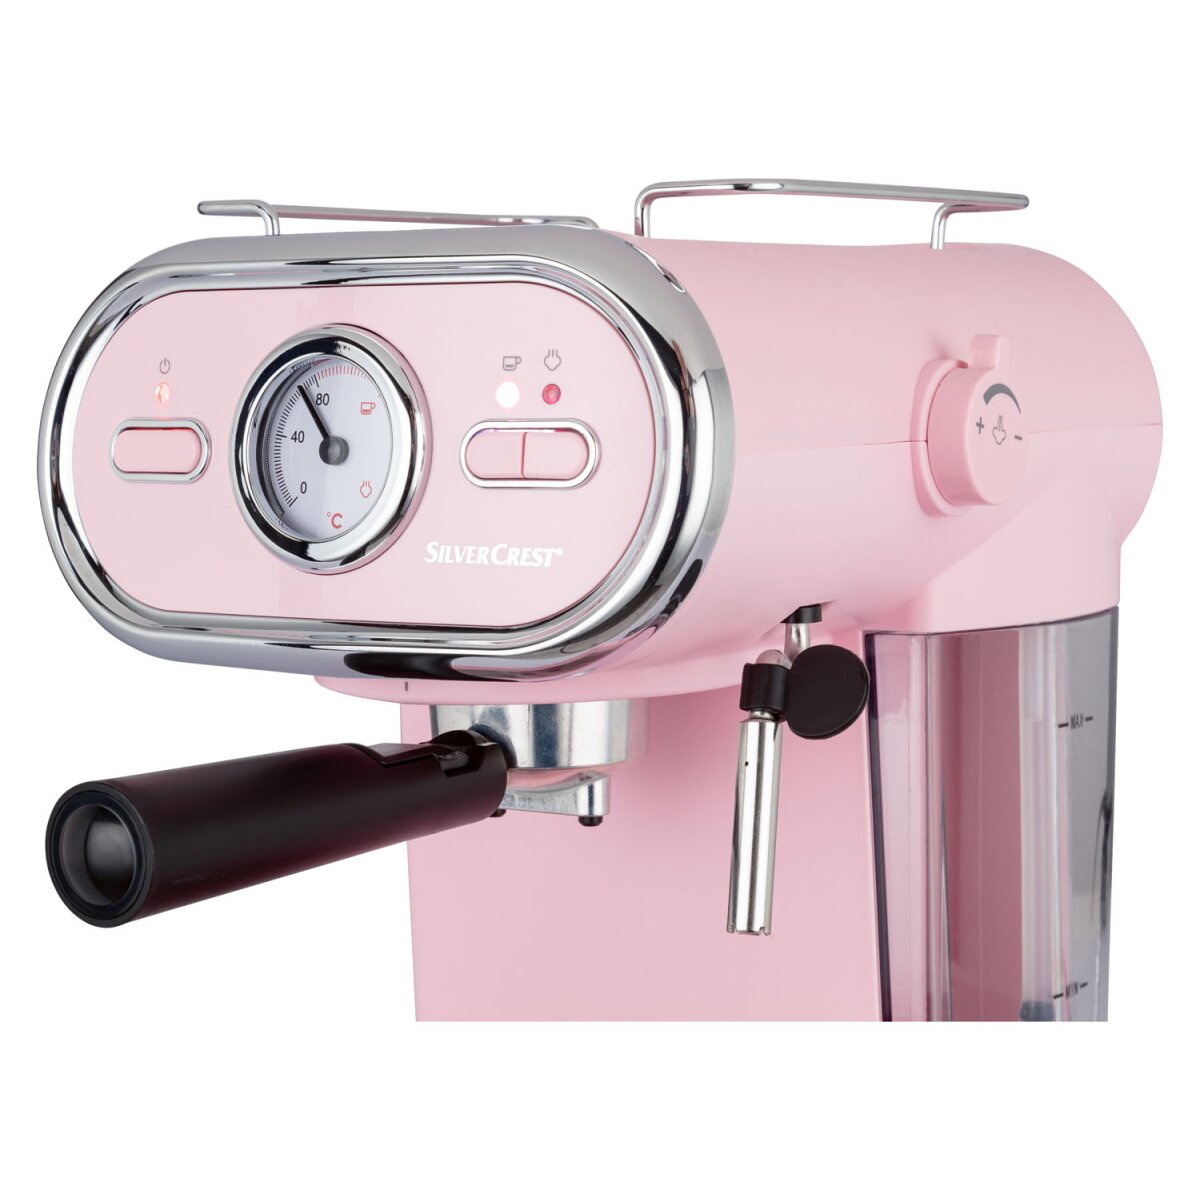 B-Ware Espressomaschine/Siebträger - 41,99 rosa gut, € Pastell 1100 TOOLS SILVERCREST® KITCHEN D3 SEM